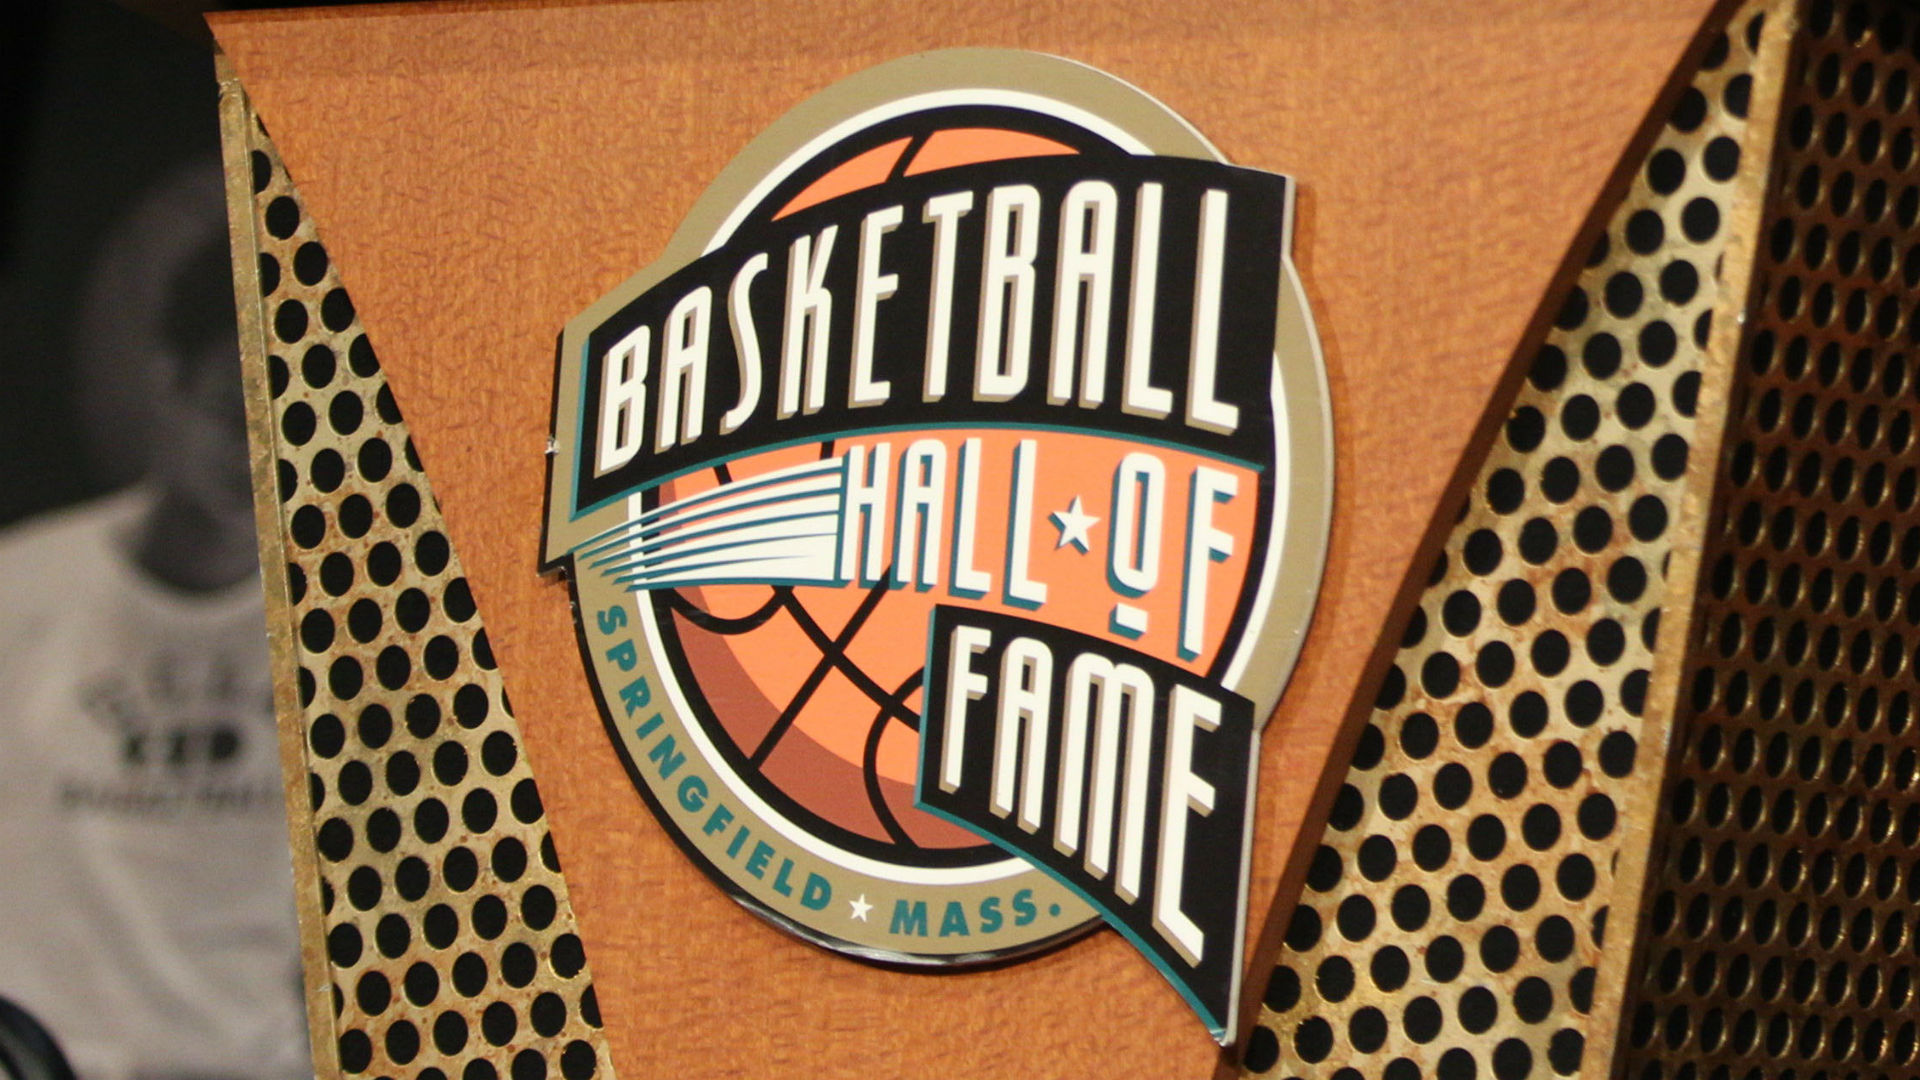 Hall of fame tiny. Баскетбольный зал славы. Hall of Fame NBA. Hall of Fame NBA Museum. Баскетбольный зал славы Нейсмита.